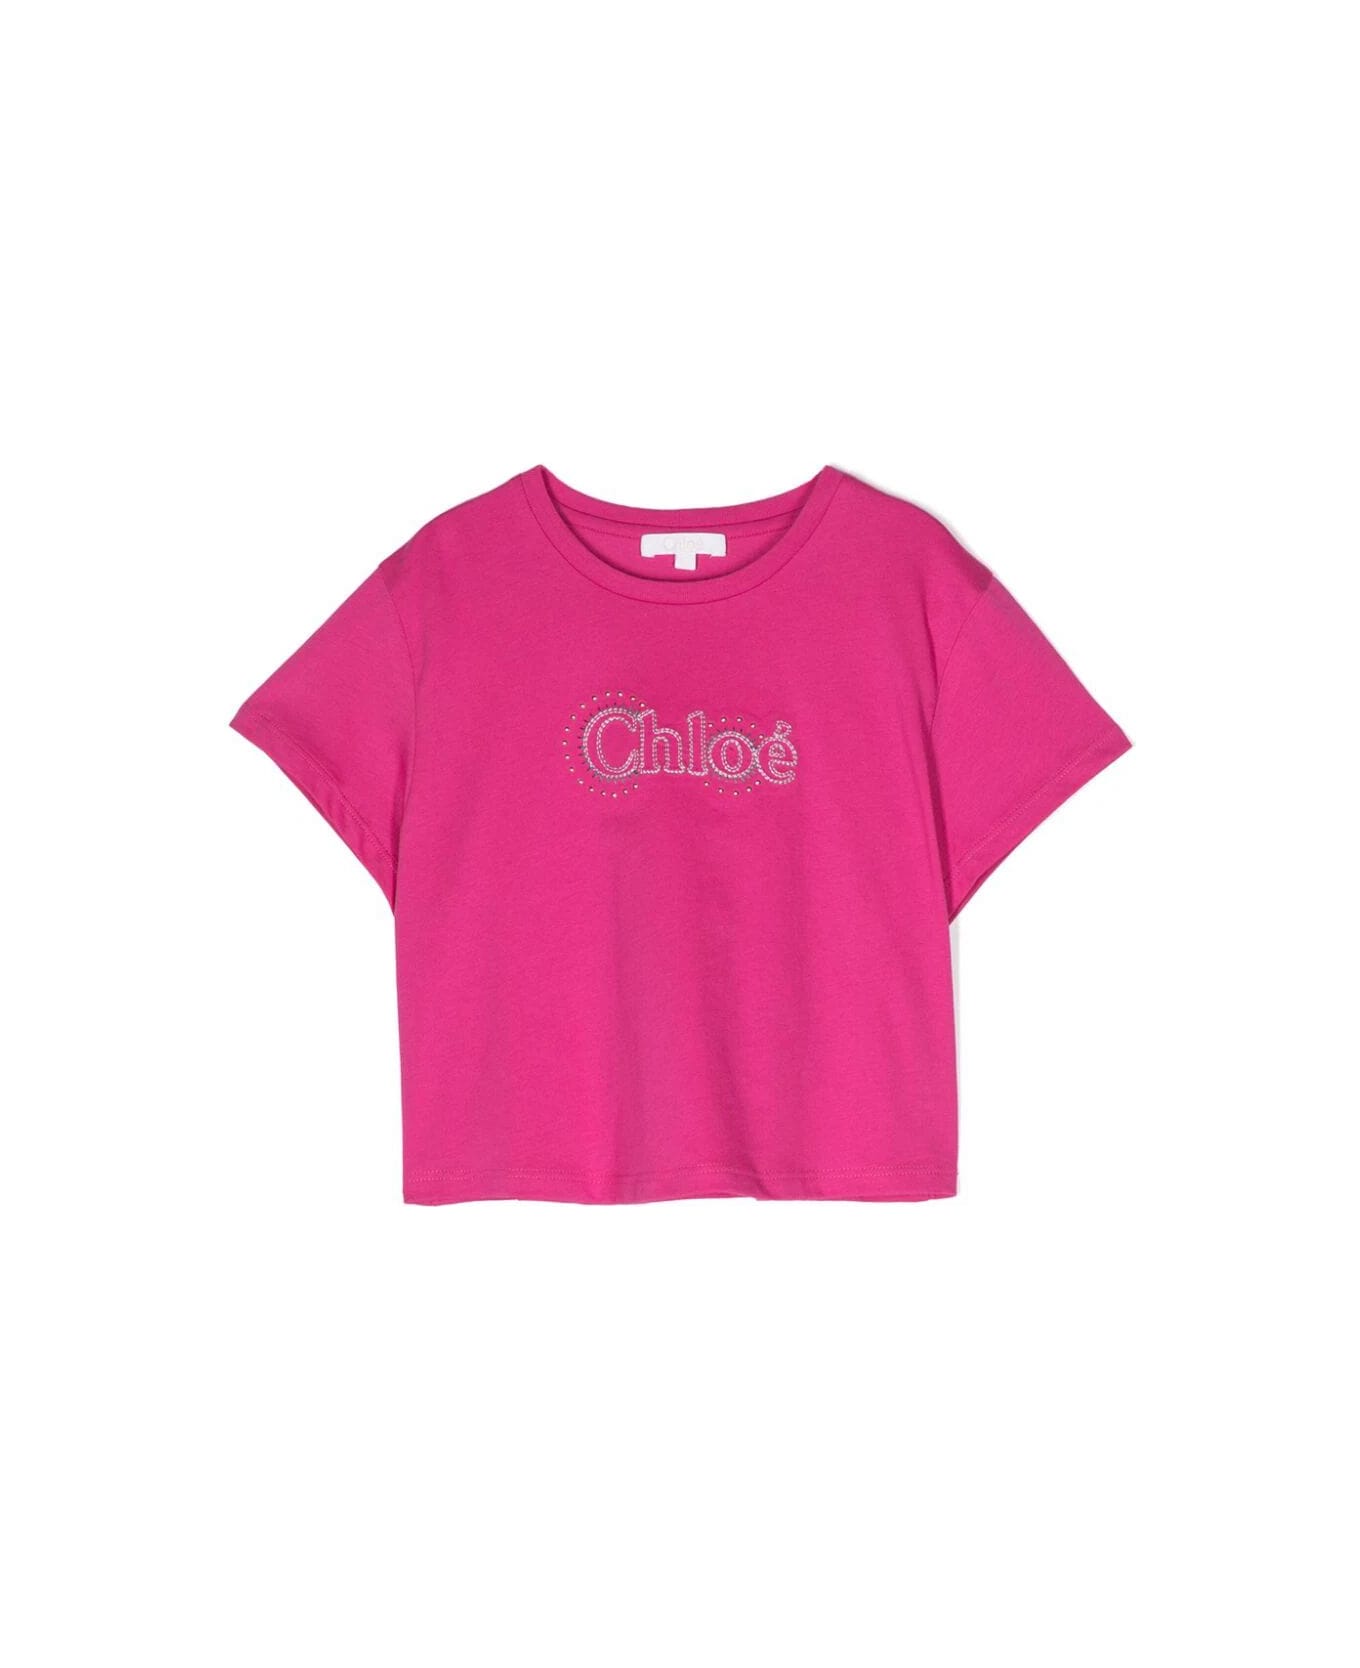 Chloé Short Sleeves T-shirt - L Pink